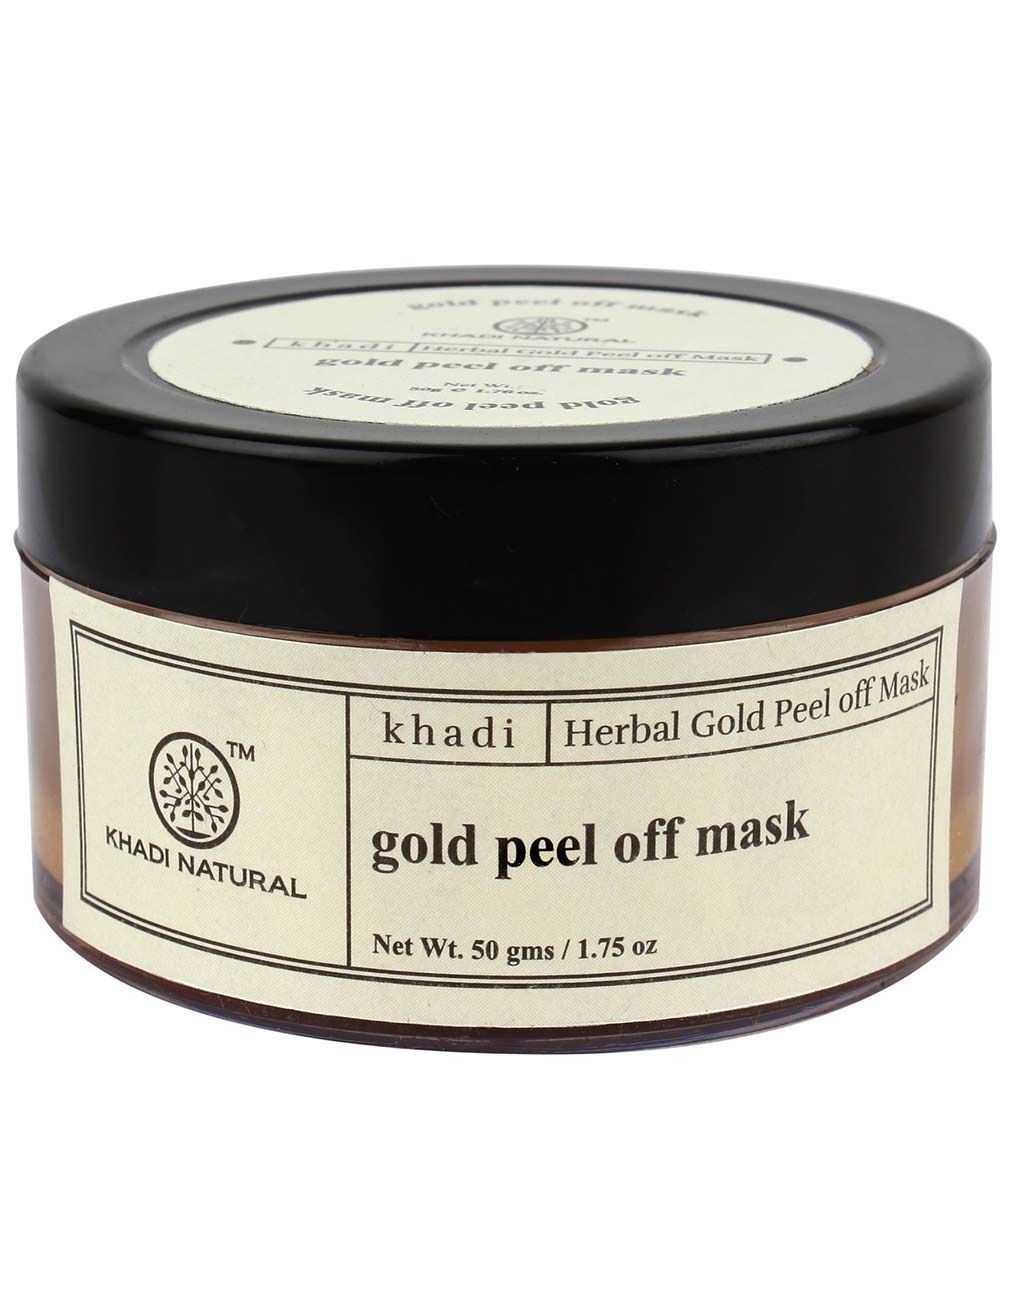 Кхади Очищающая маска с золотом, 50г., Herbal Gold Peel off Mask, Khadi.